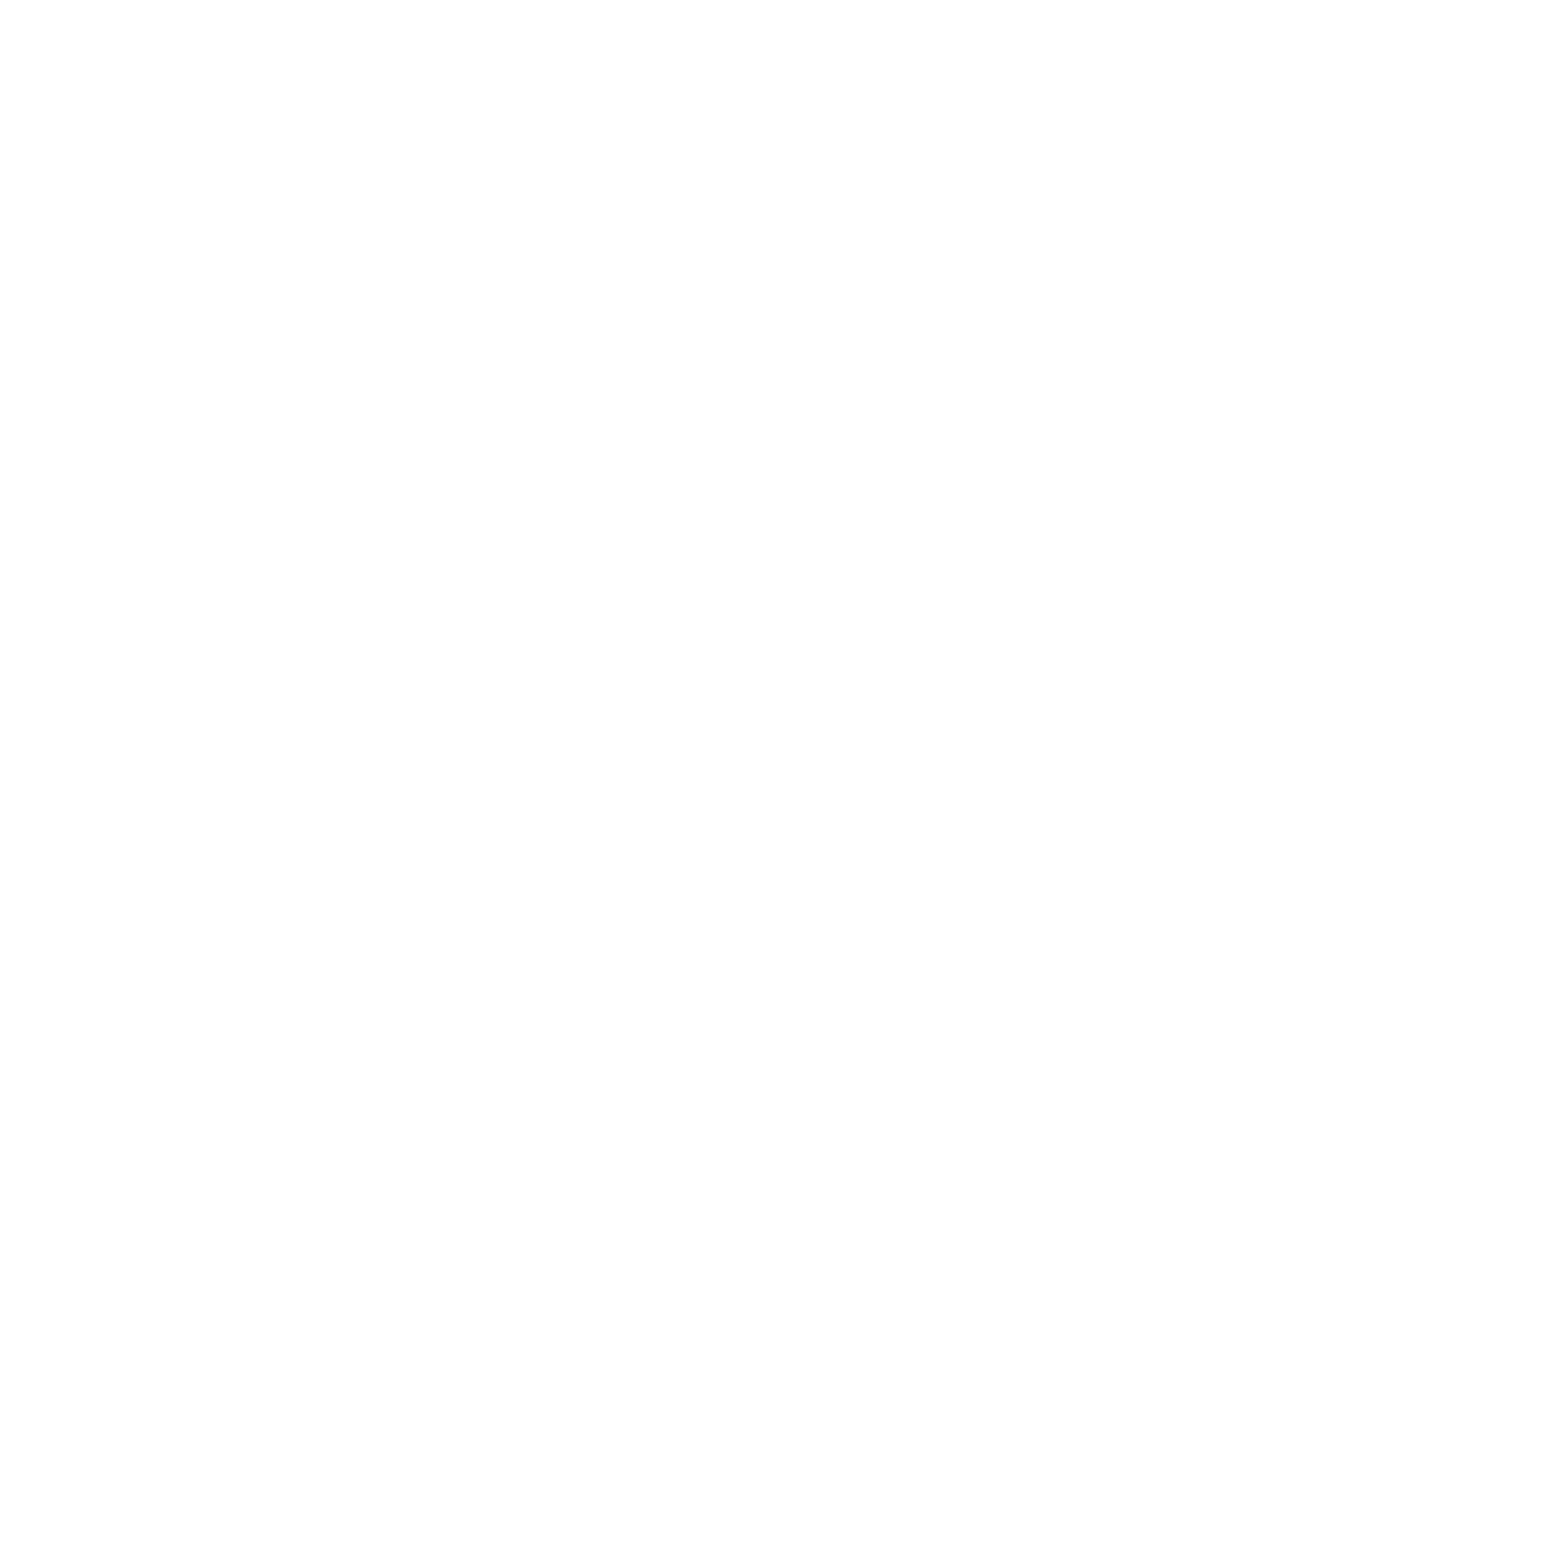 Vesta Real Estate logo for dark backgrounds (transparent PNG)